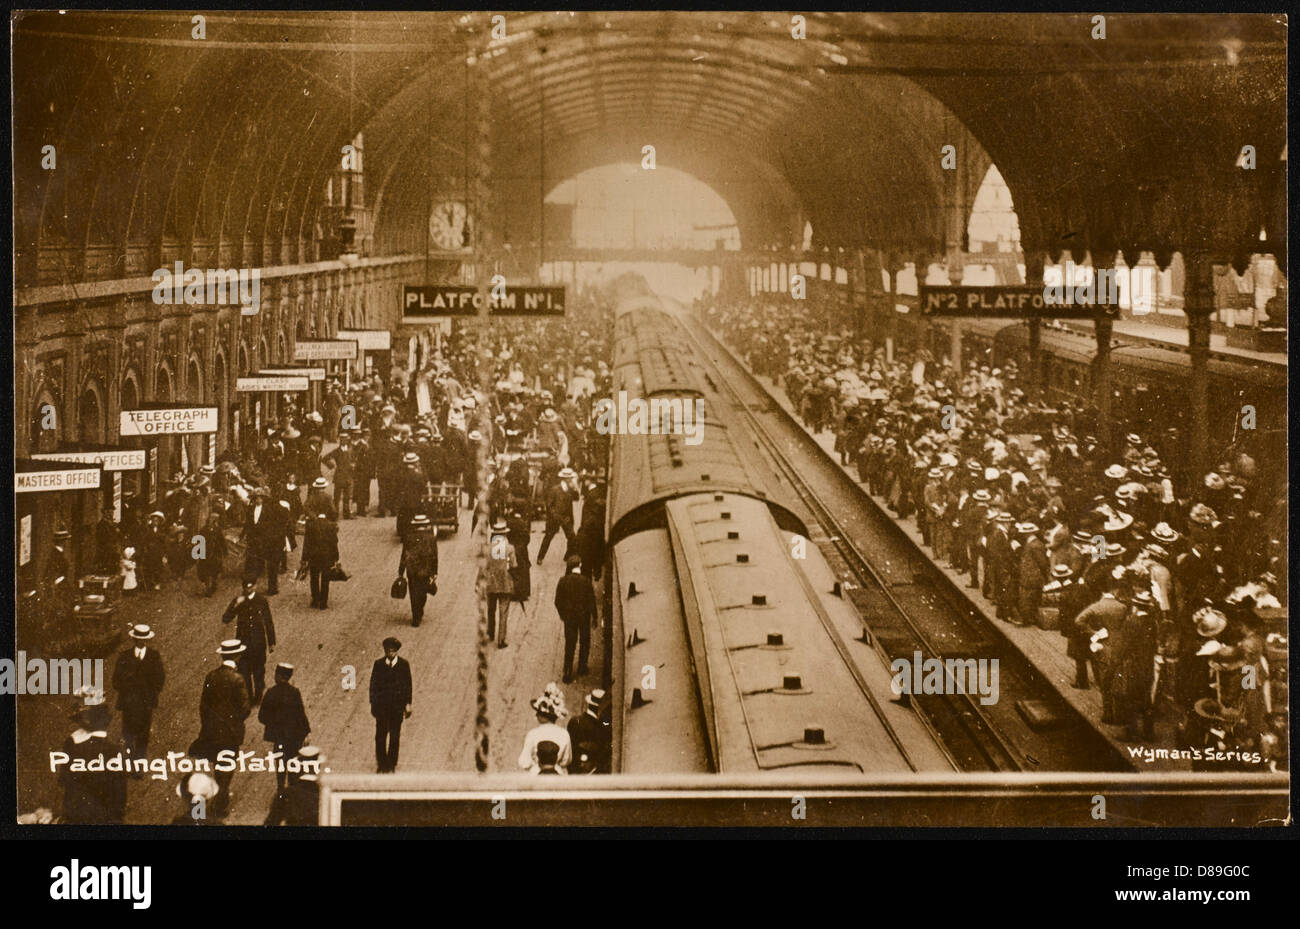 Paddington Platforms 2 Stock Photo